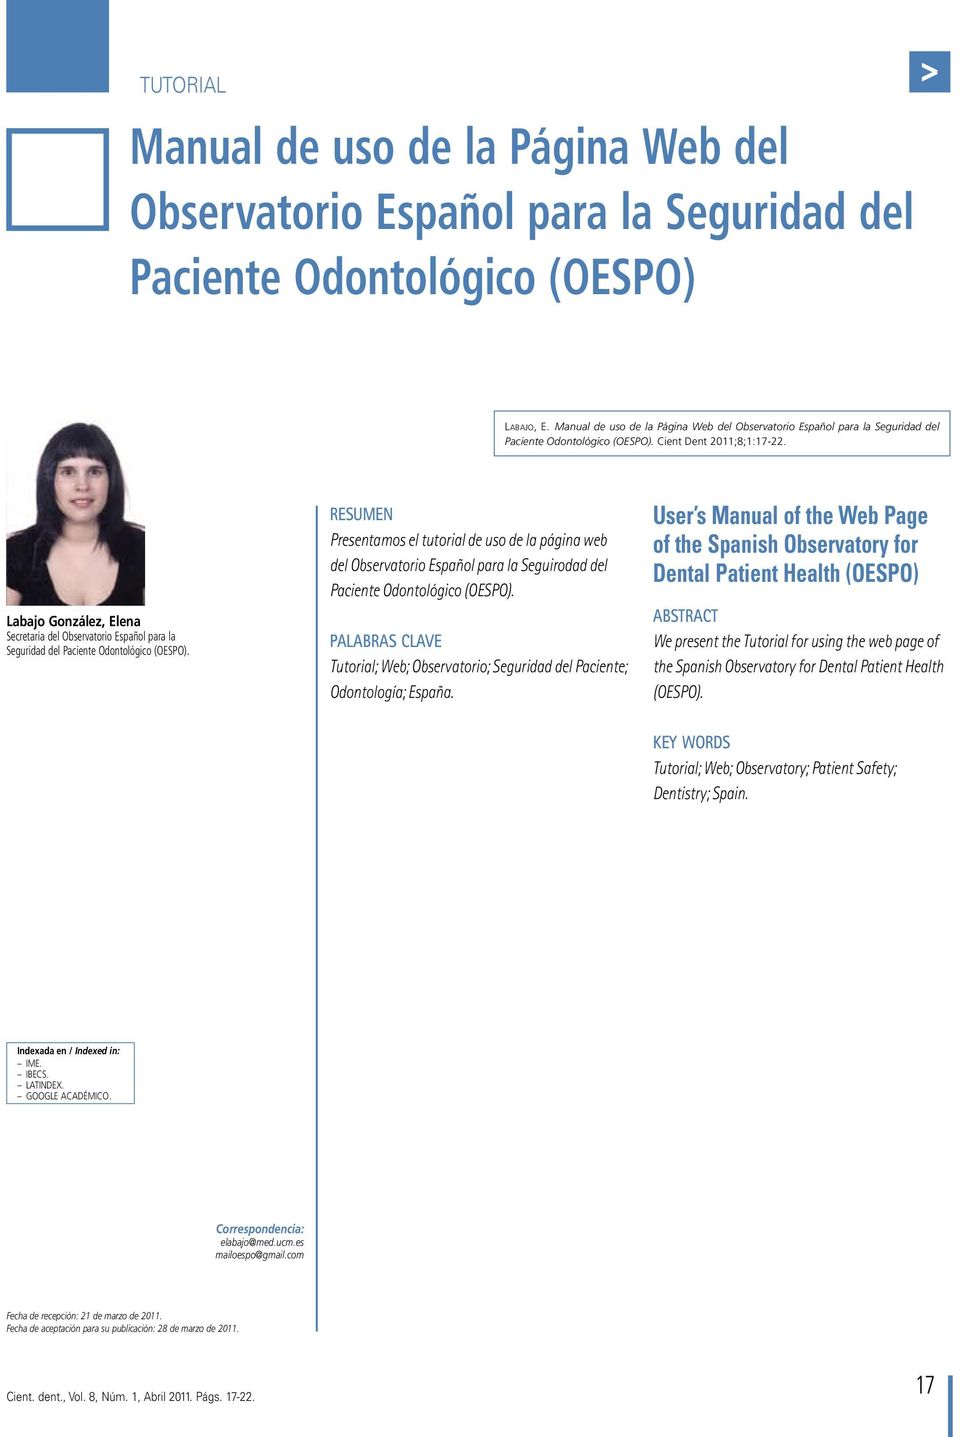 Secretaria del Observatorio Español para la Seguridad del Paciente Odontológico (OESPO).